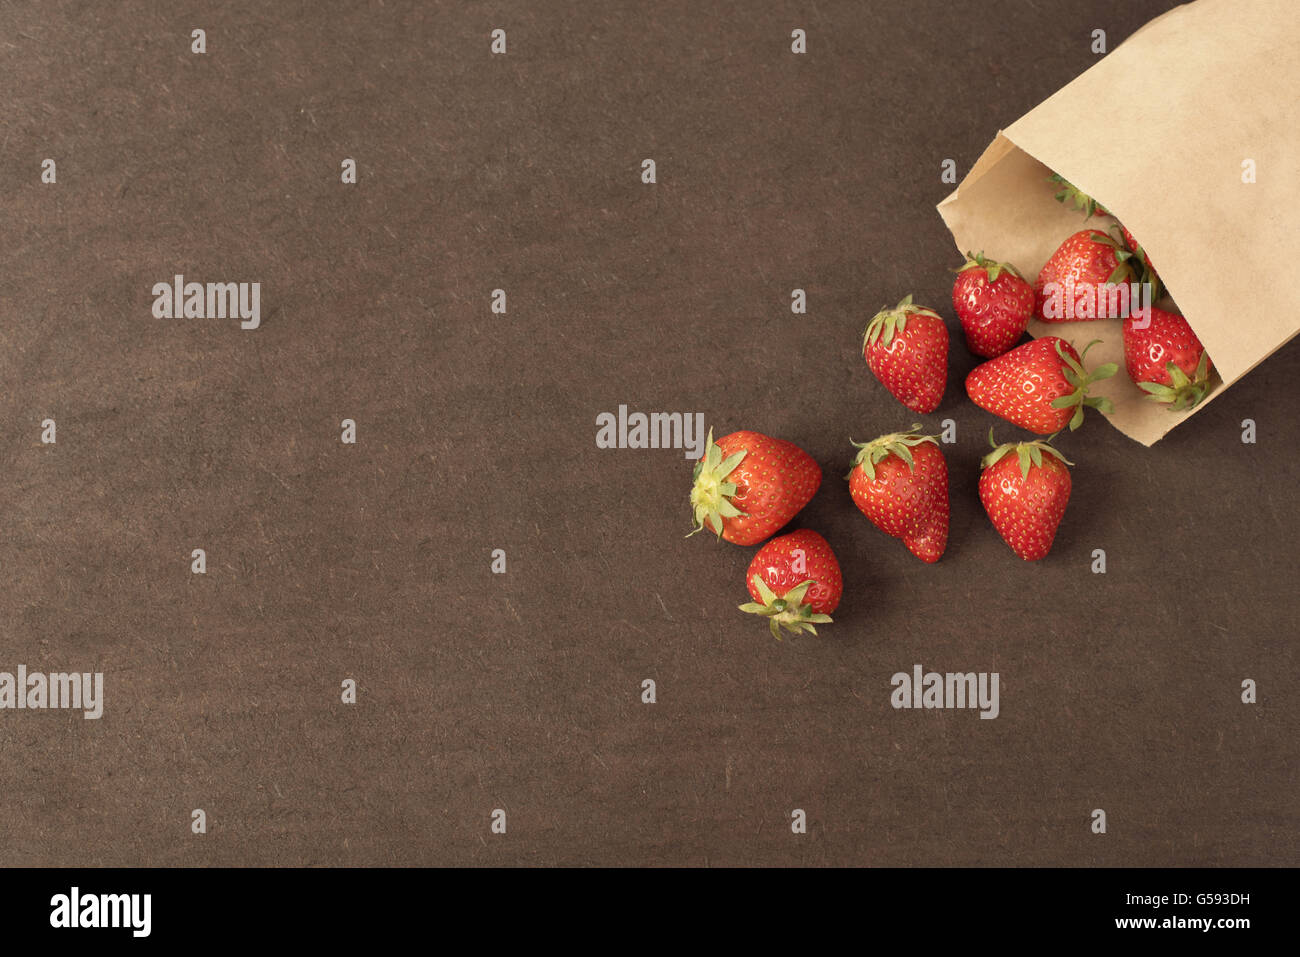 Sac de papier avec des fraises rouges frais. Fraises fraîches dans un petit sac sur une surface en bois. Petit groupe de fraises Banque D'Images